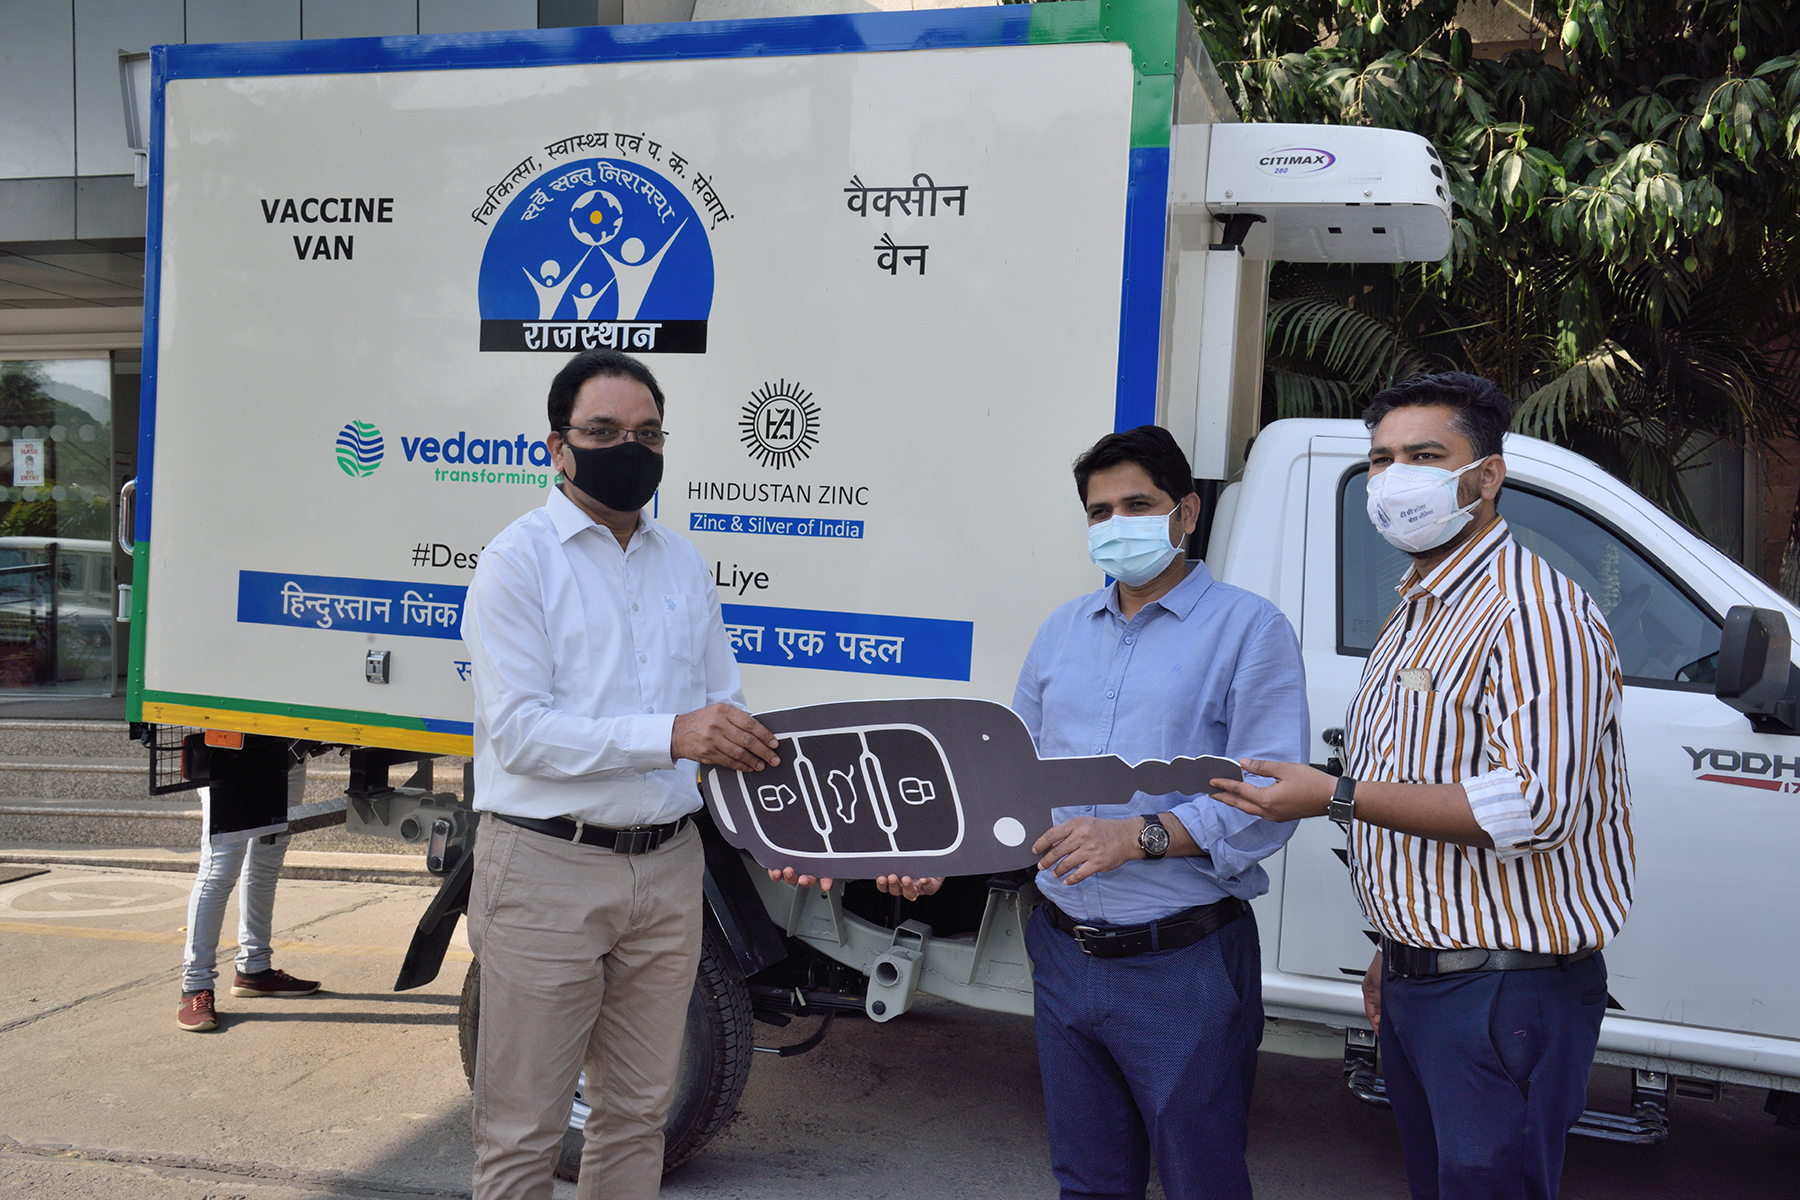 हिंदुस्तान जिंक ने चिकित्सा विभाग को इंस्यूलेटेड वैक्सीन वैन की भेंट